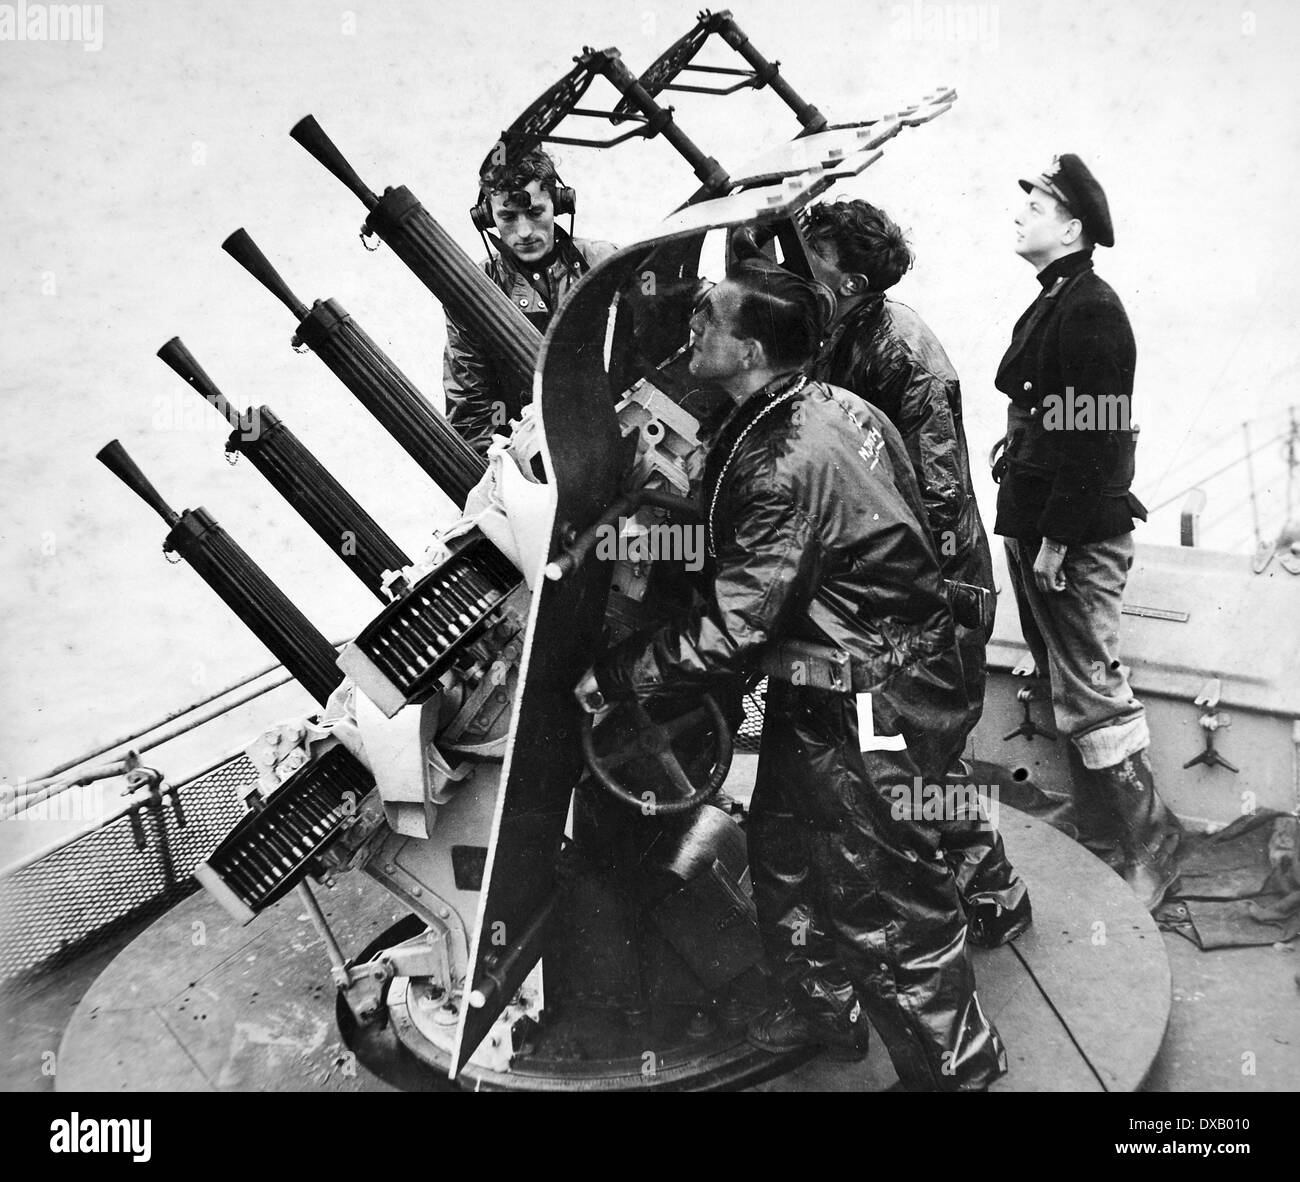 Royal Navy Zweiter Weltkrieg. Eine Anti-Aircraft Gewehr in Aktion Stockfoto